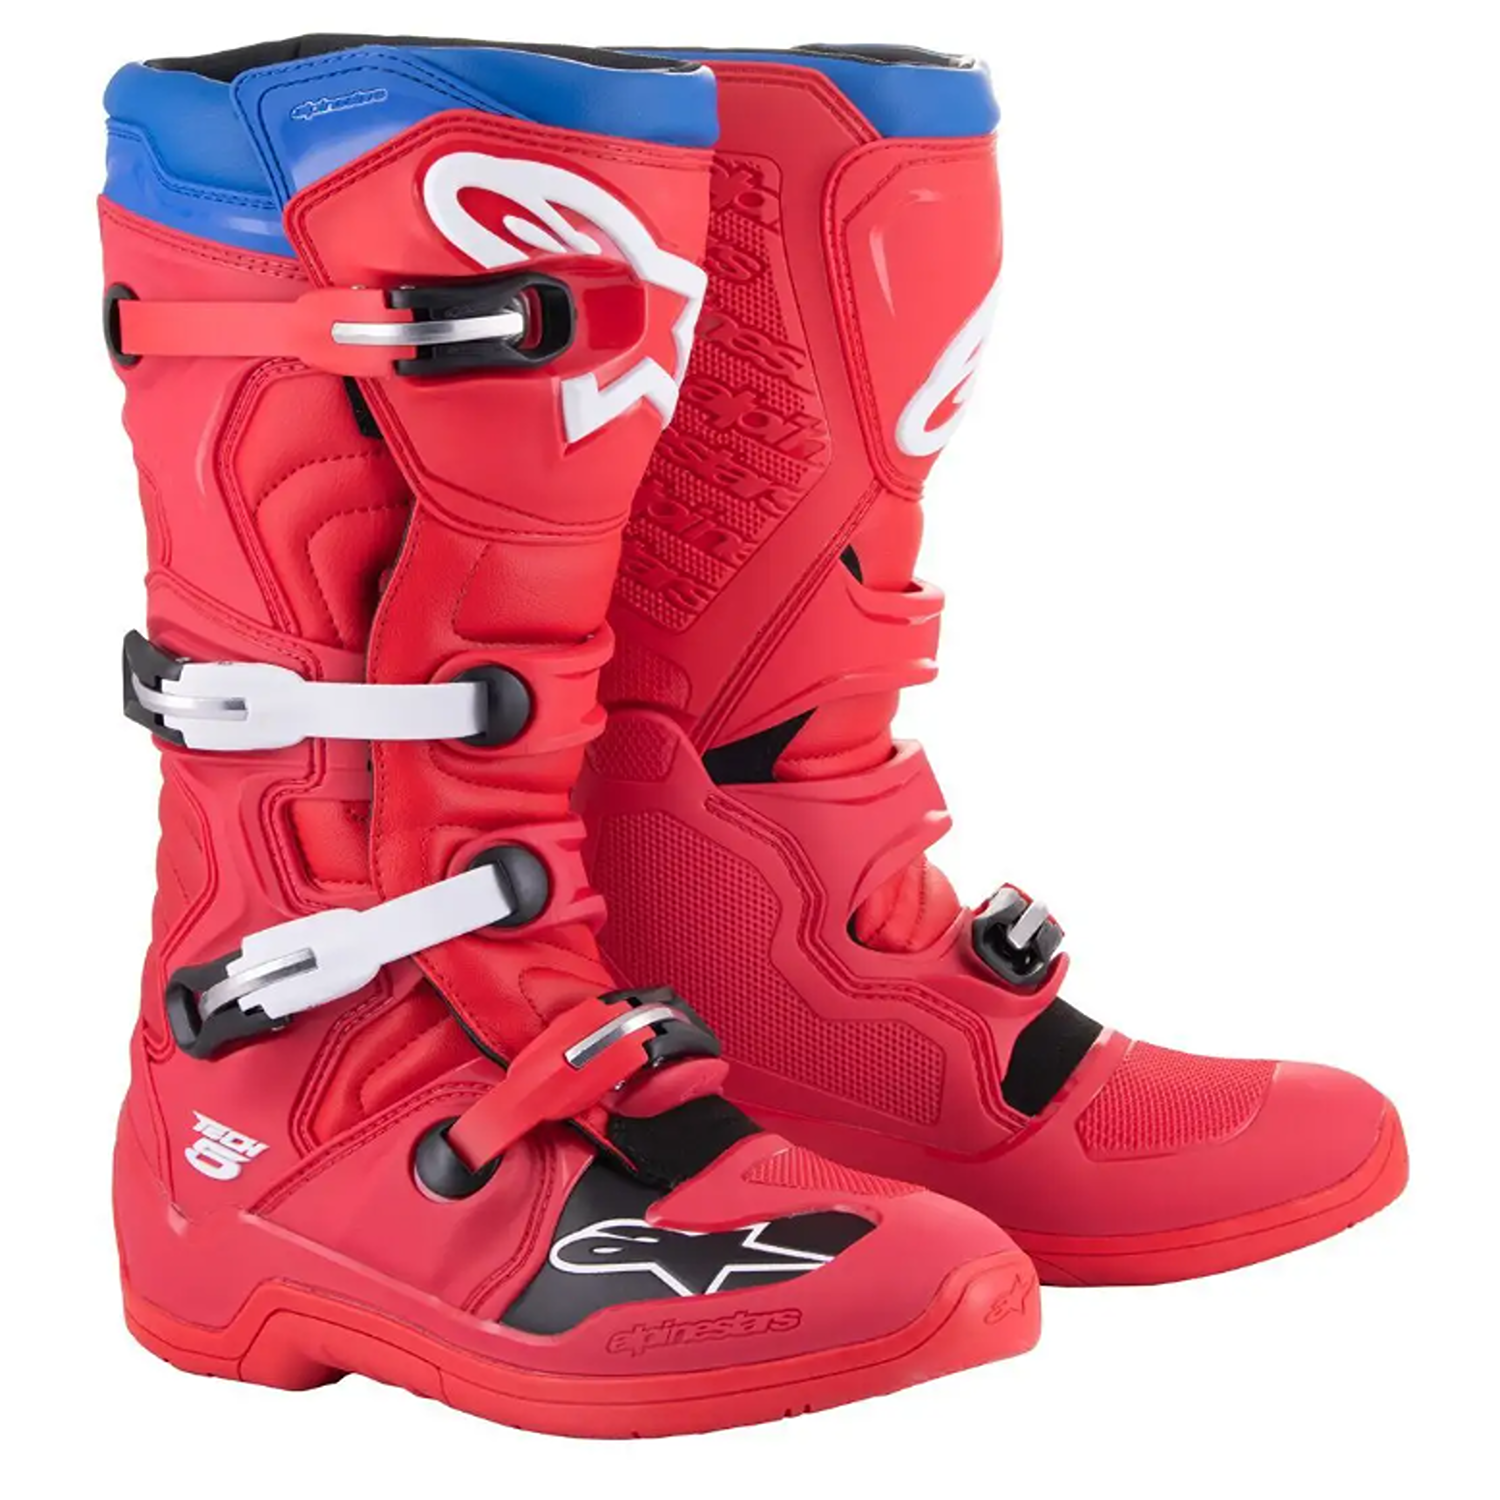 Image of Alpinestars Tech 5 Boots Bright Red Dark Red Blue Größe US 7